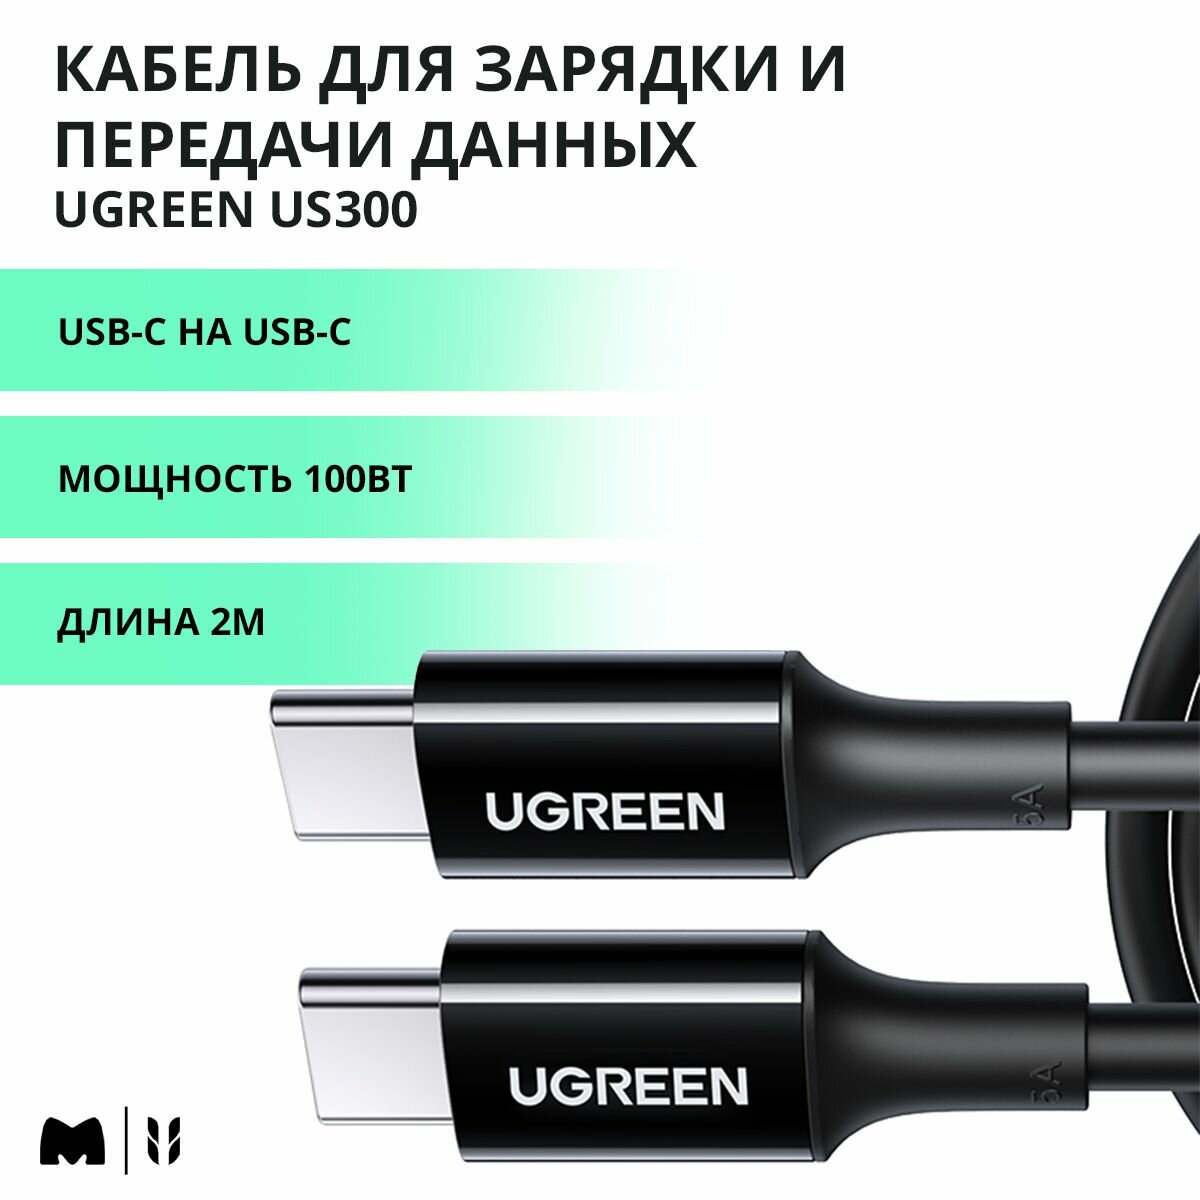 Кабель для быстрой зарядки и передачи данных UGREEN US300 / USB-C на USB-C / PD 100Вт, 480 Mbps / Длина 2м / цвет черный (80372)